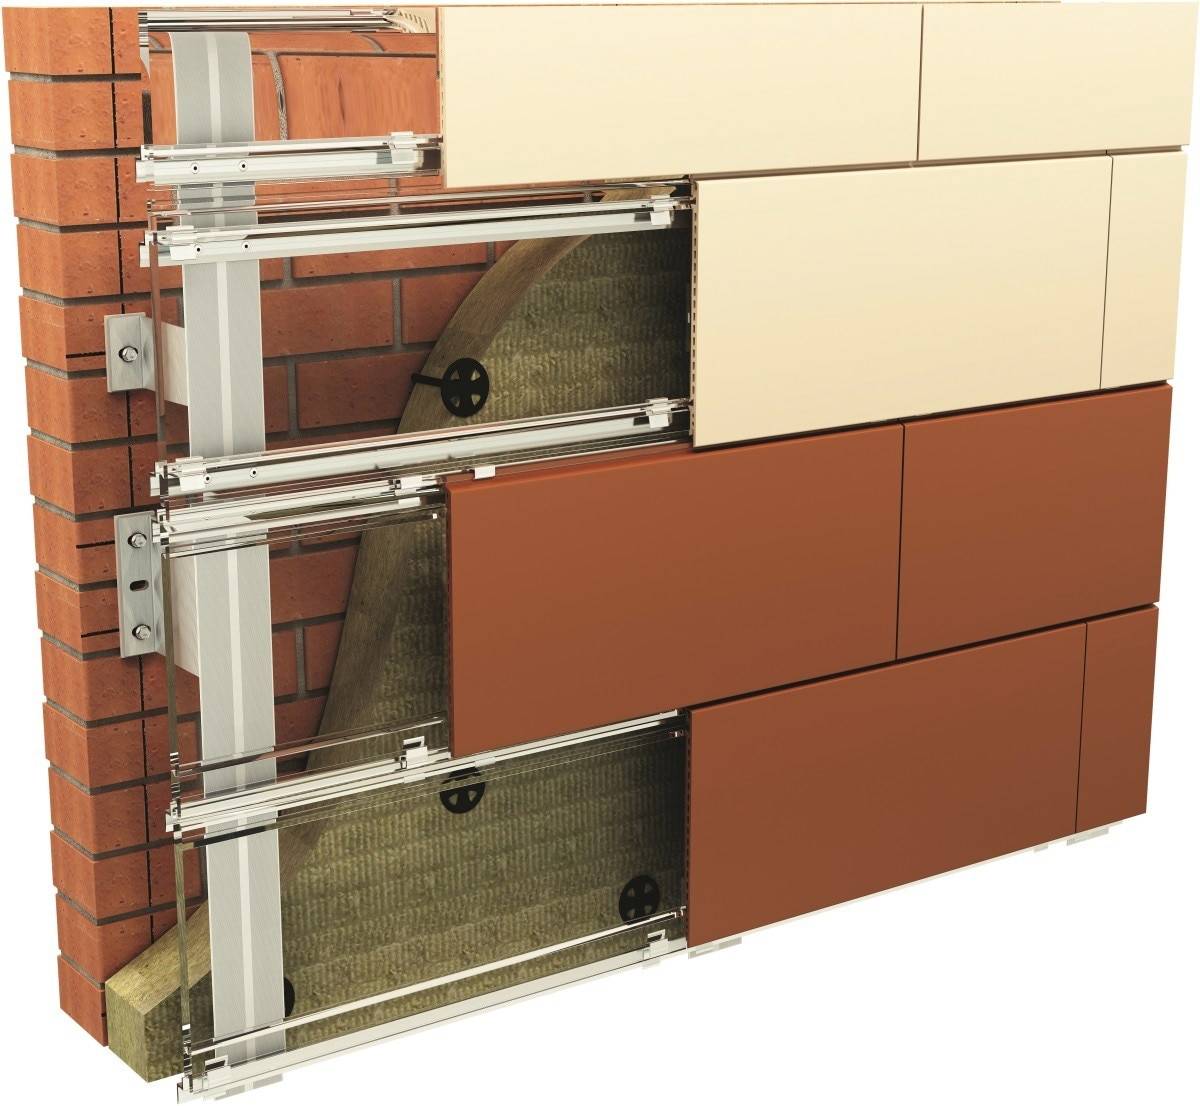 Фасадные термопанели для наружной отделки дома: характеристики и монтаж. что выбрать фасадные панели или термопанели для отделки дома